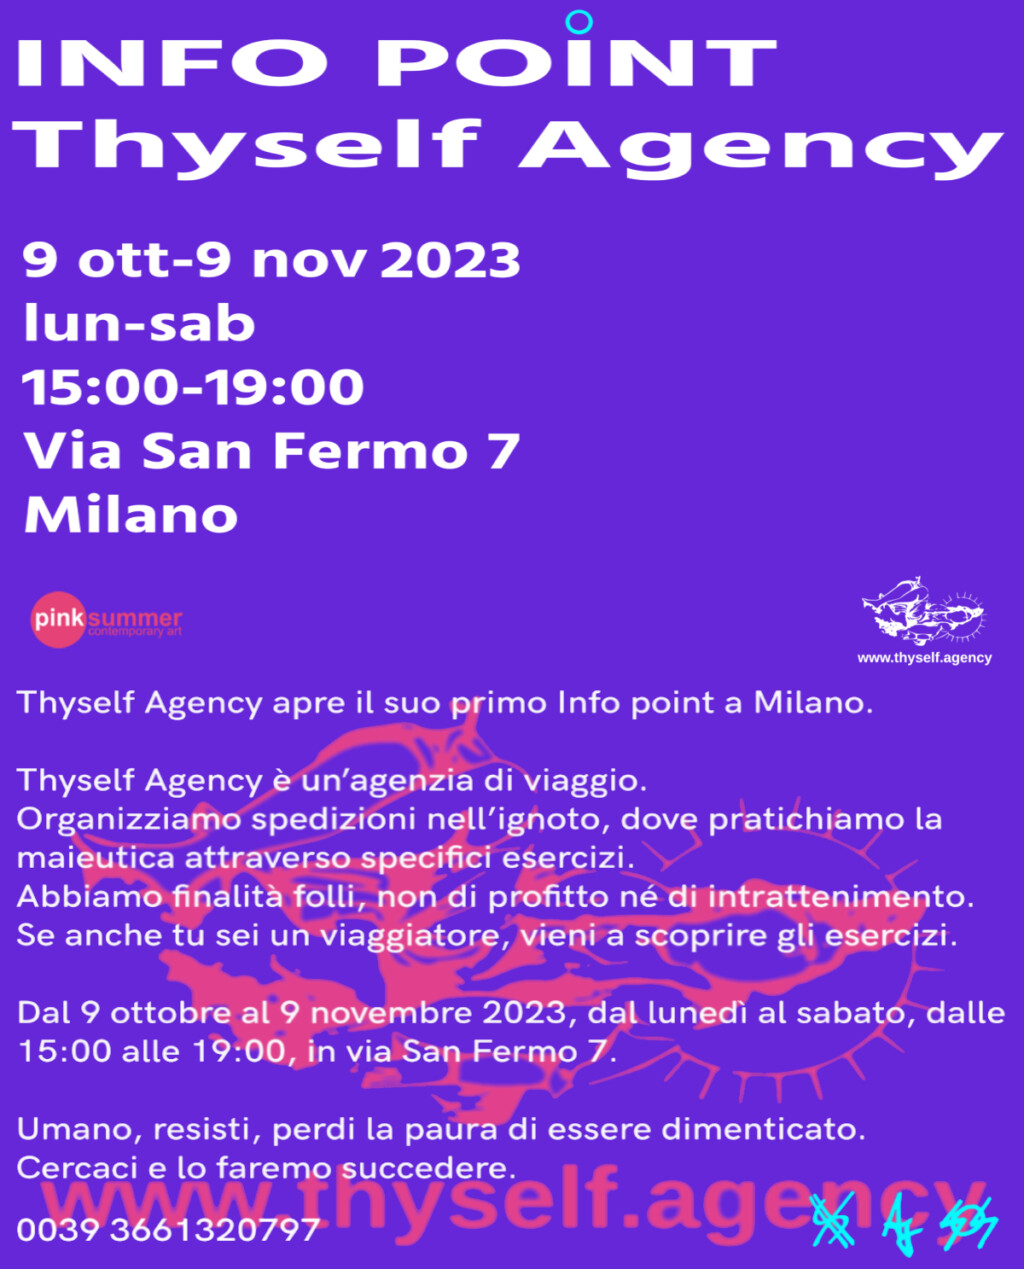 Thyself Agency Agency